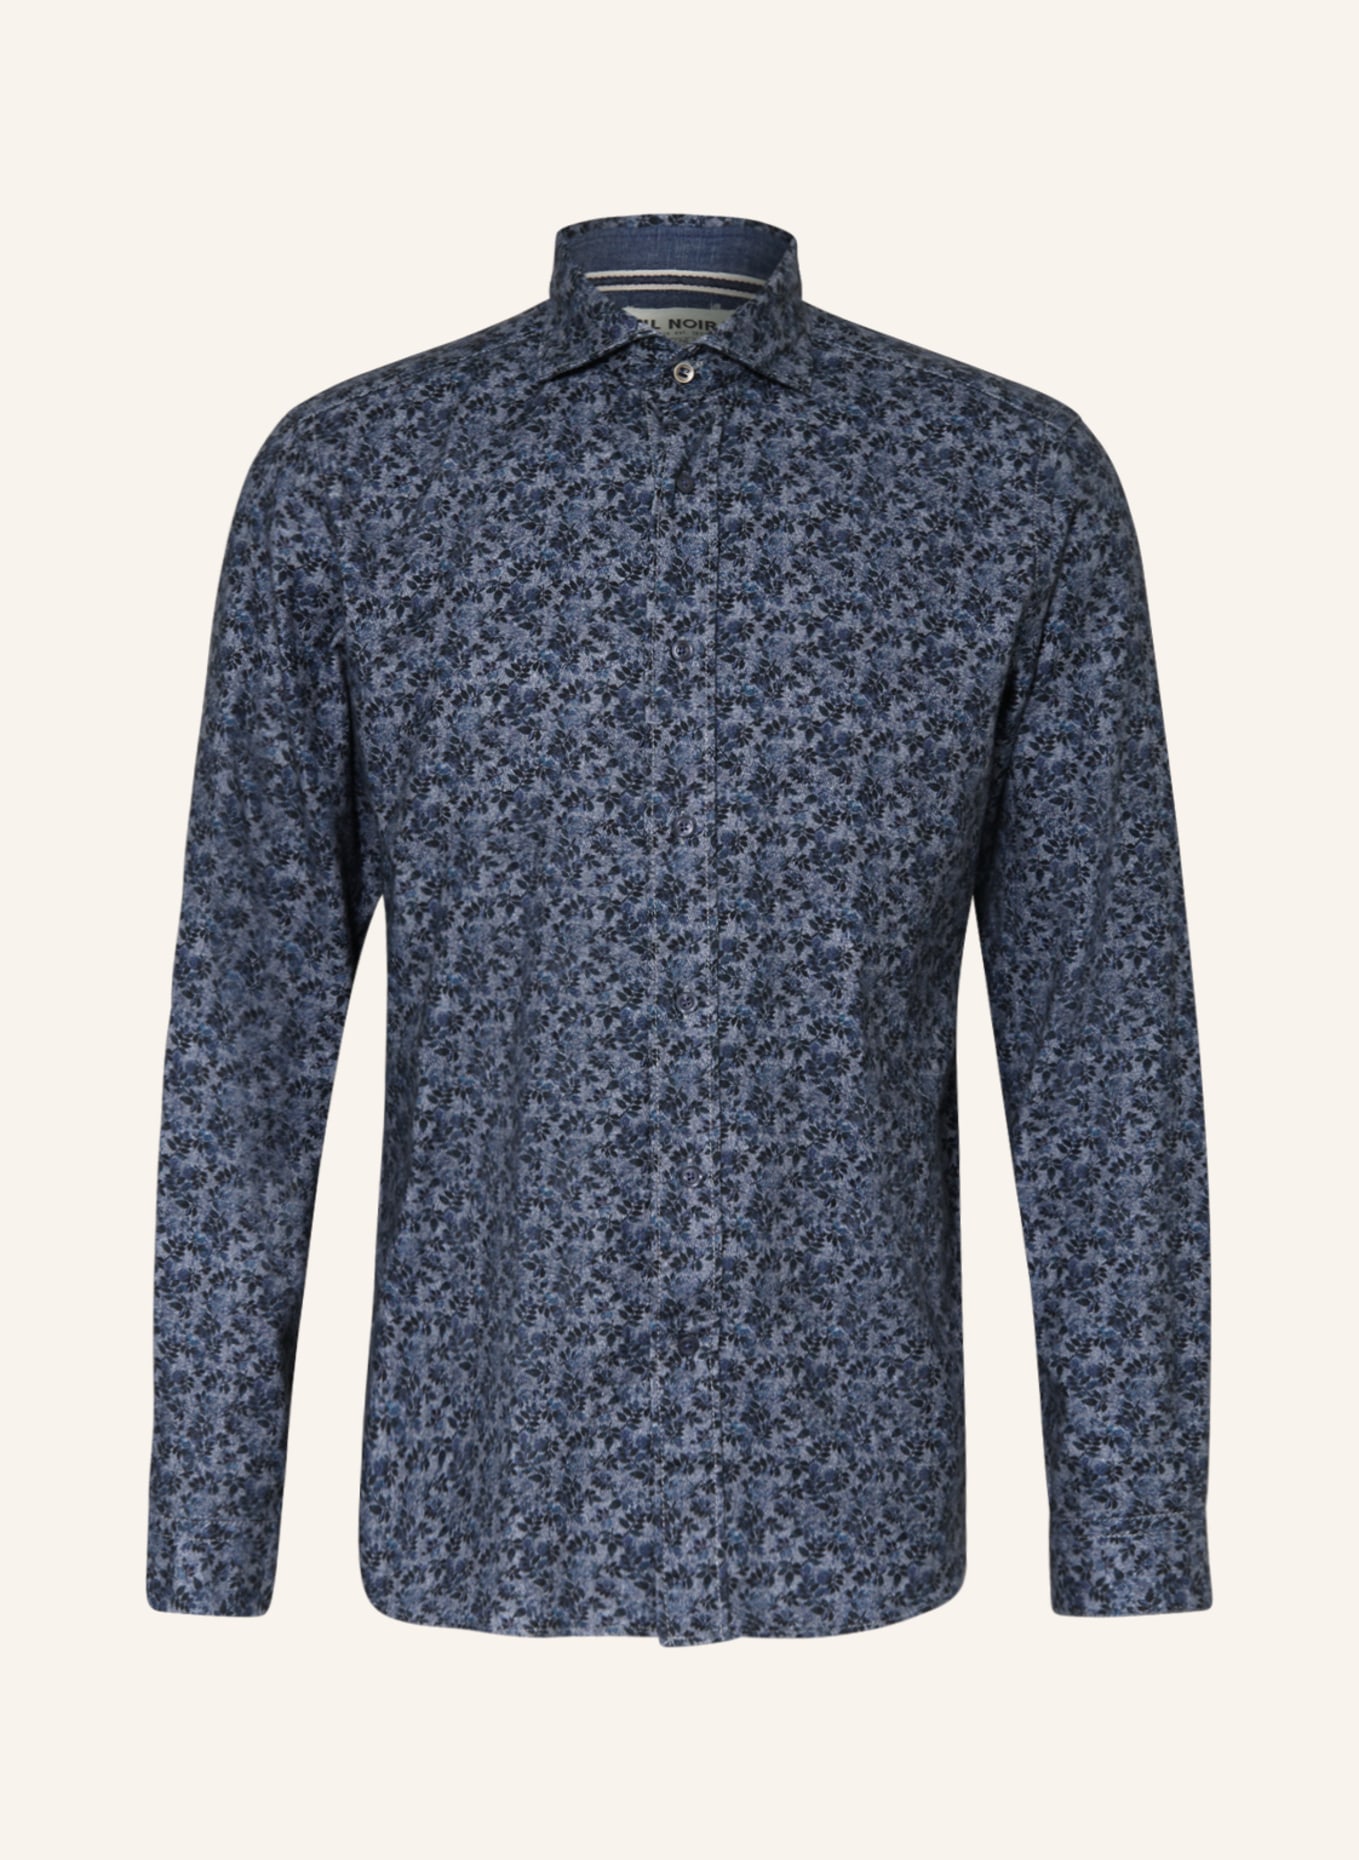 FIL NOIR Flannel shirt GIUSEPPE shaped fit, Color: DARK BLUE/ BLUE/ LIGHT BLUE (Image 1)